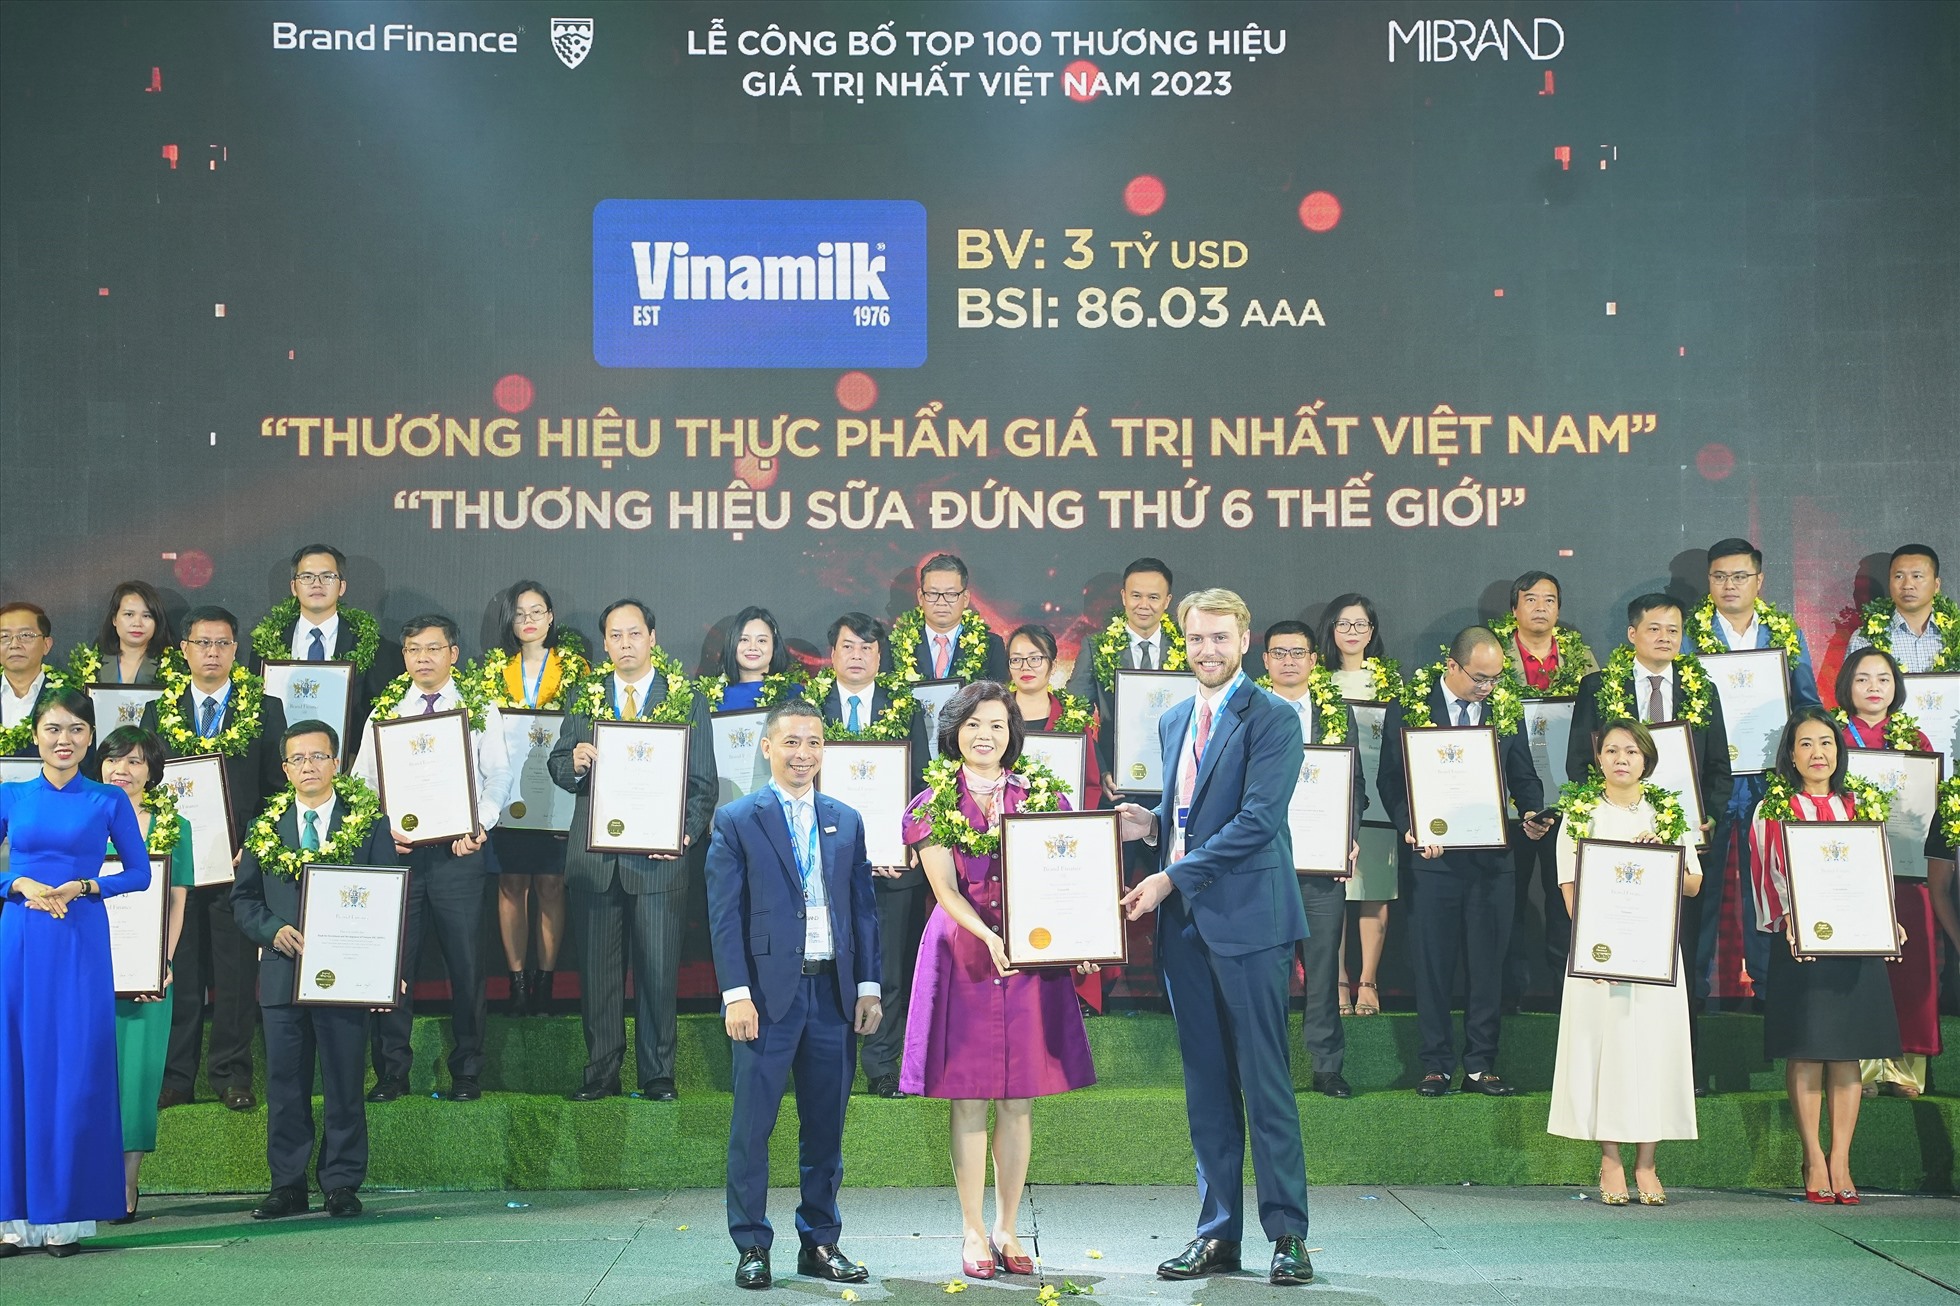 Bà Bùi Thị Hương, Giám đốc Điều hành Nhân sự - Hành chính - Đối ngoại, đại diện Vinamilk đón nhận các chứng nhận từ Brand Finance. Ảnh: Mibrand